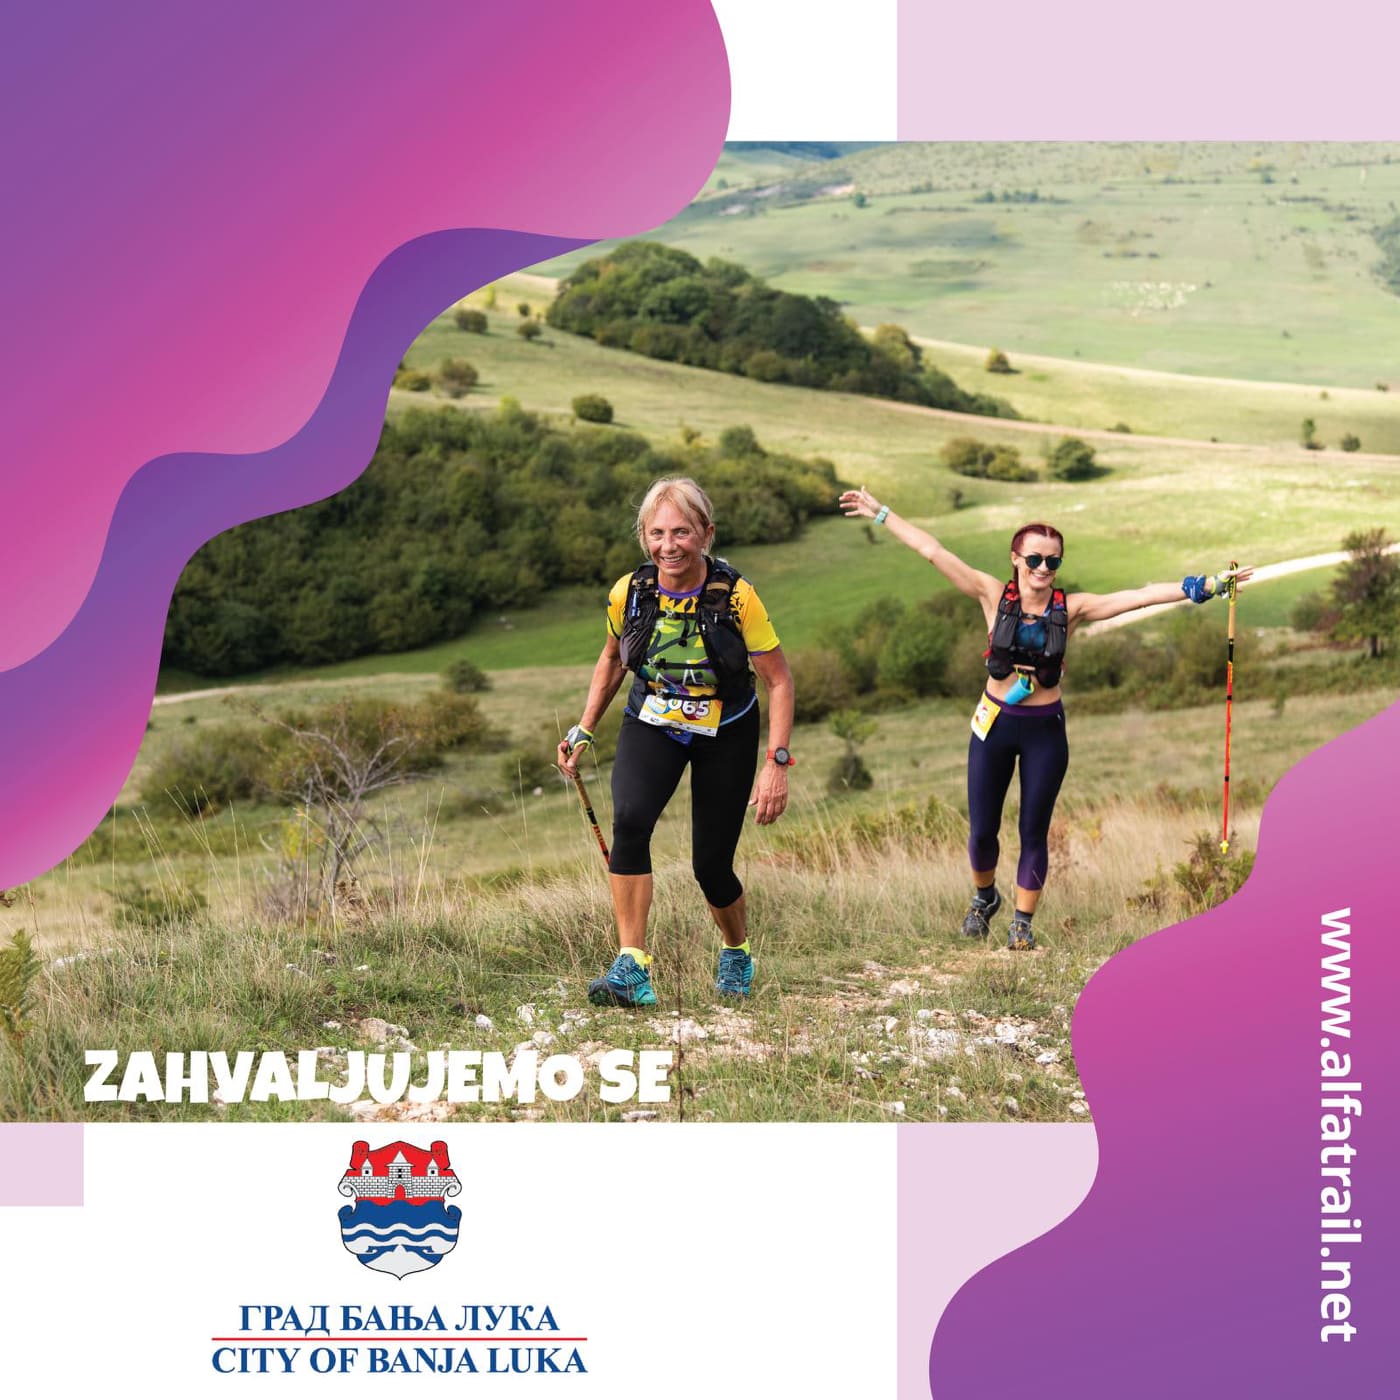 Prijave u toku: Banja Luka se priprema za 4. Zmijanjski maraton